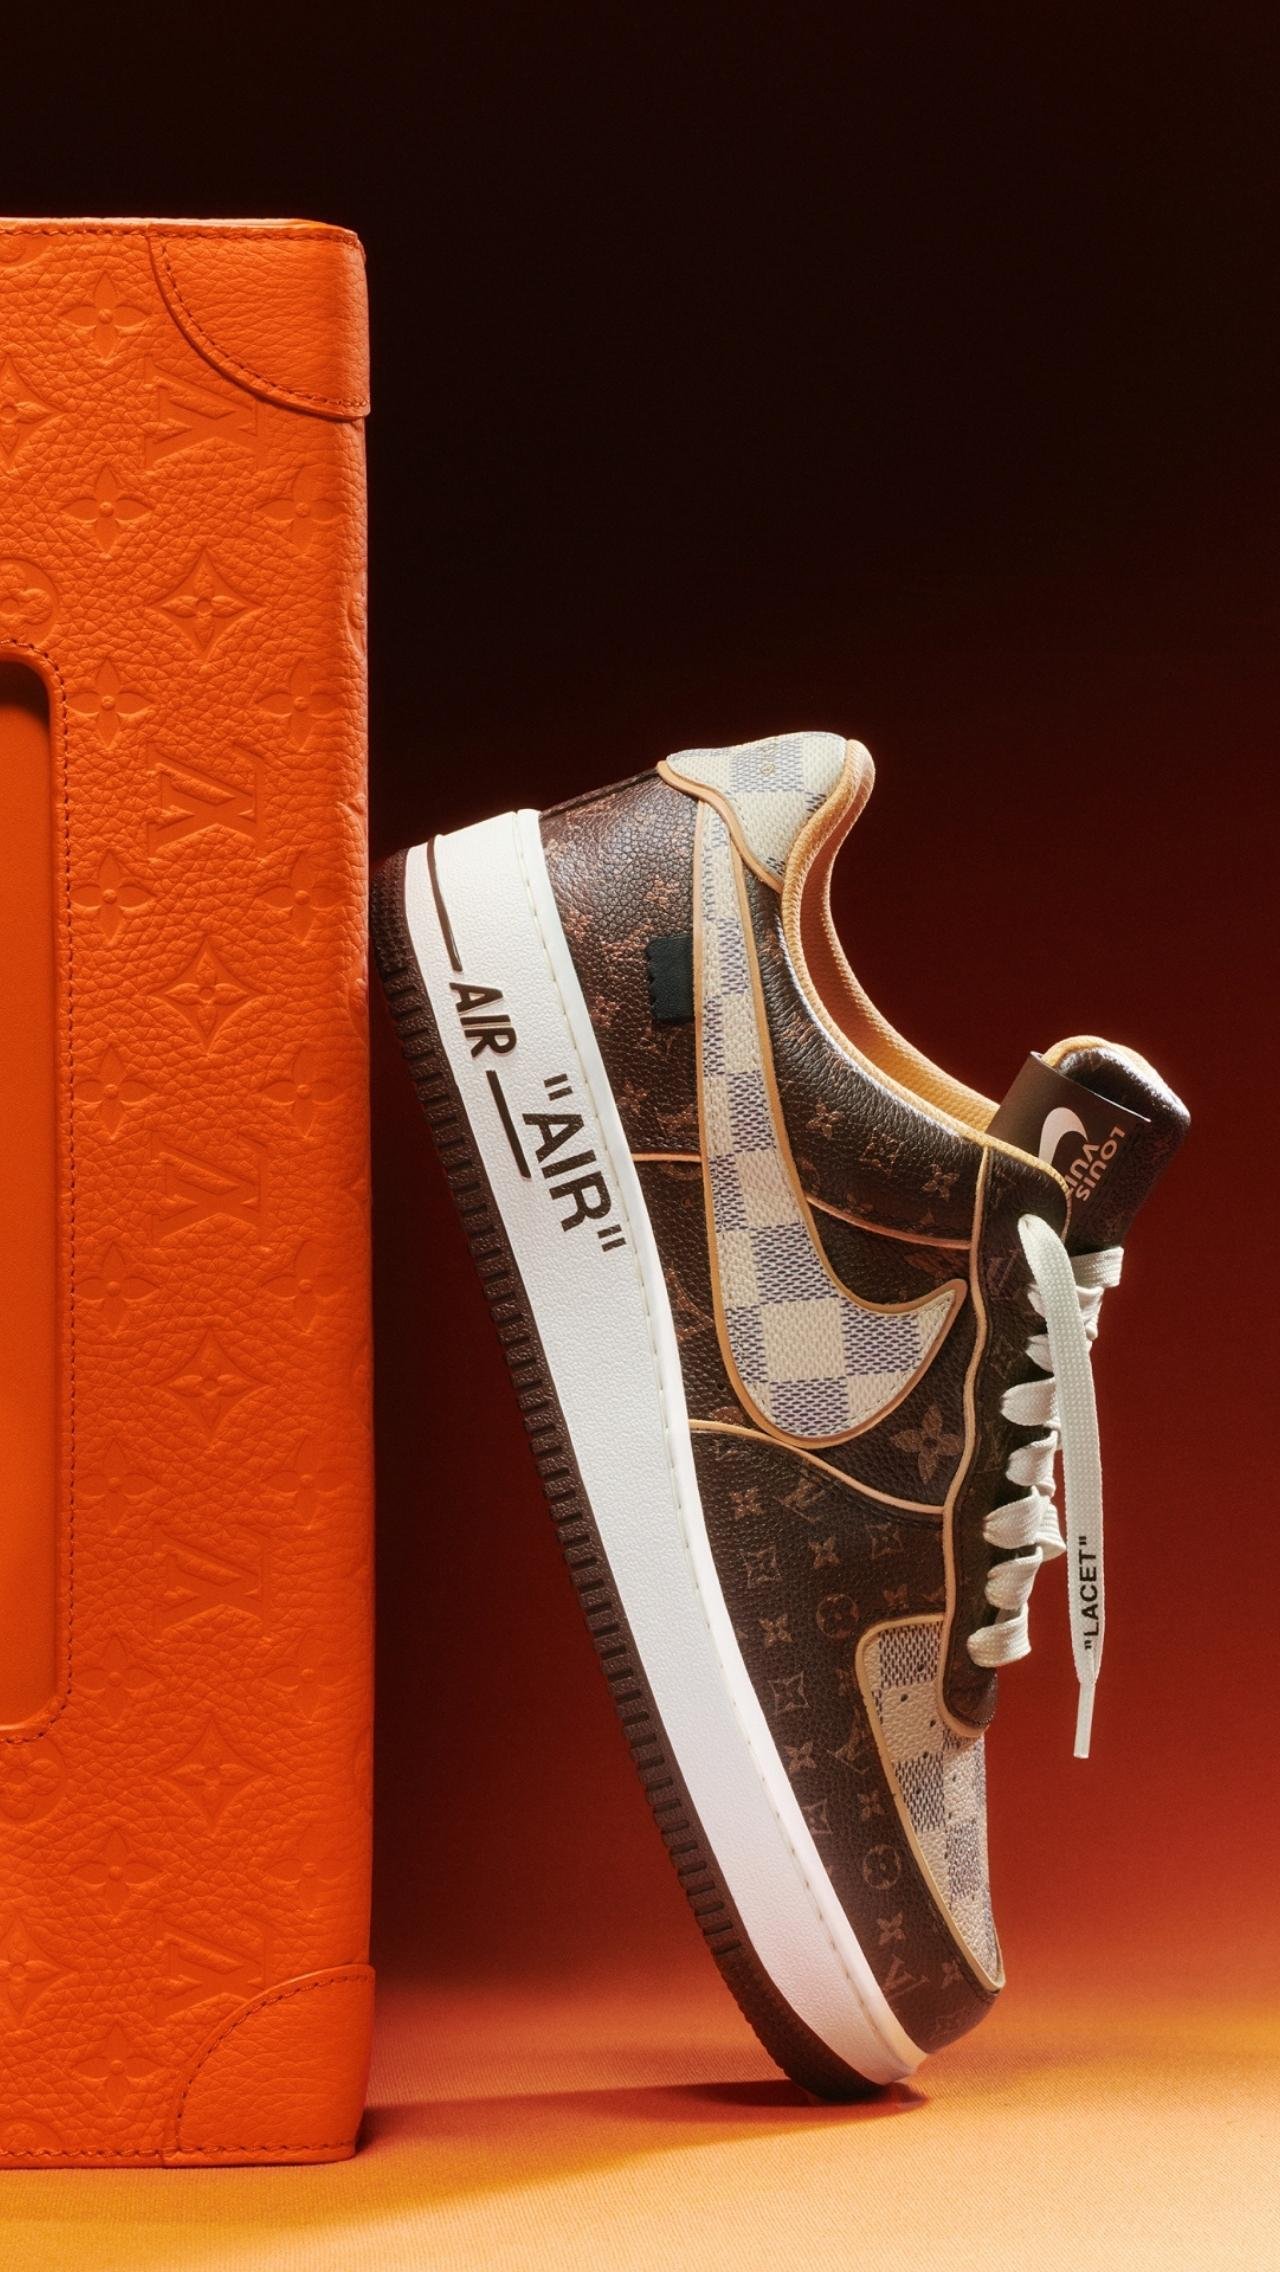 Релиз долгожданной коллаборации Louis Vuitton х Nike состоится на специальном благотворительном онлайн-аукционе Sotheby's. Кроссовки создал Вирджил Абло, смерть которого недавно оплакивал весь мир.